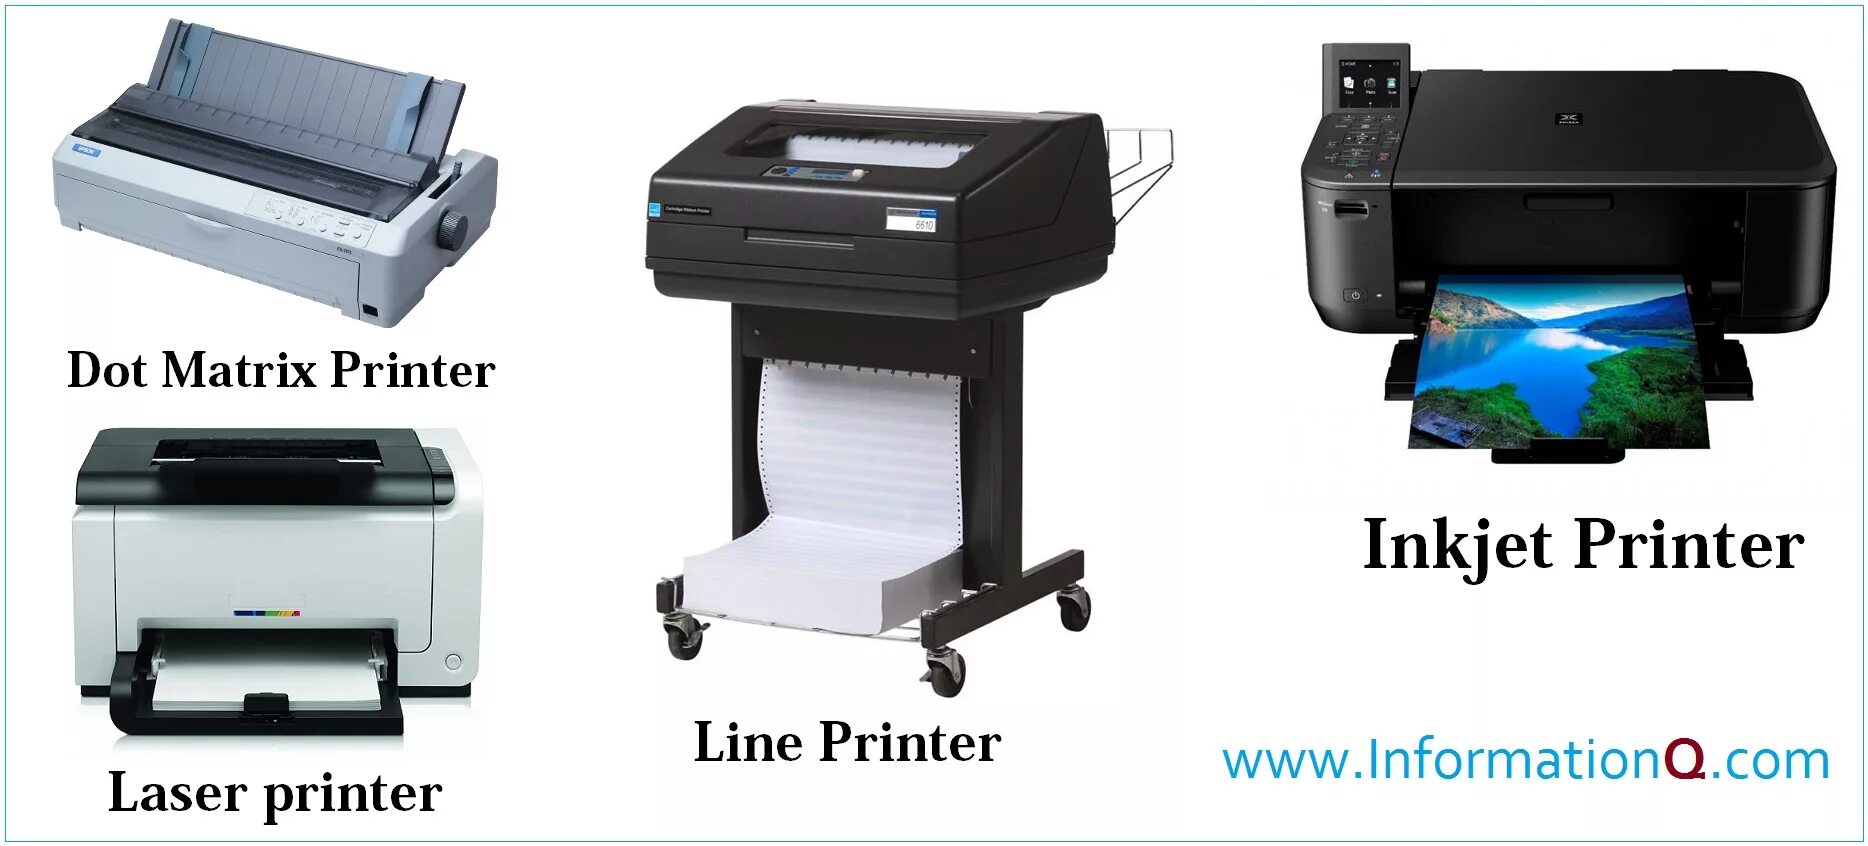 Laser Printer Inkjet Printer. Аналоговые принтеры это. Impact принтеры. Принтер старого образца. Принтер на английском языке